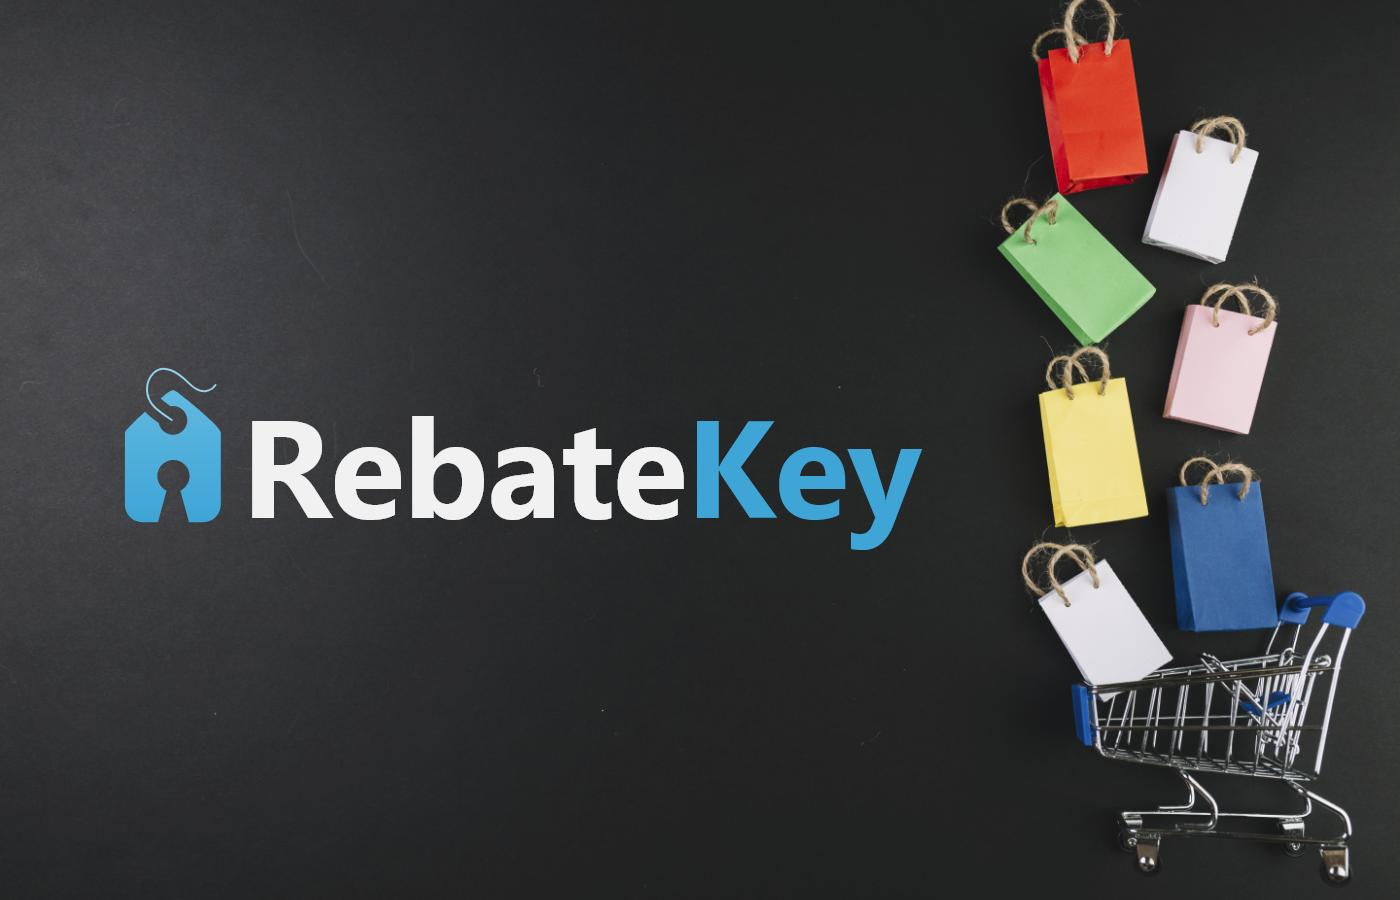 rebate-key-get-up-to-99-cash-back-rebates-when-shopping-online